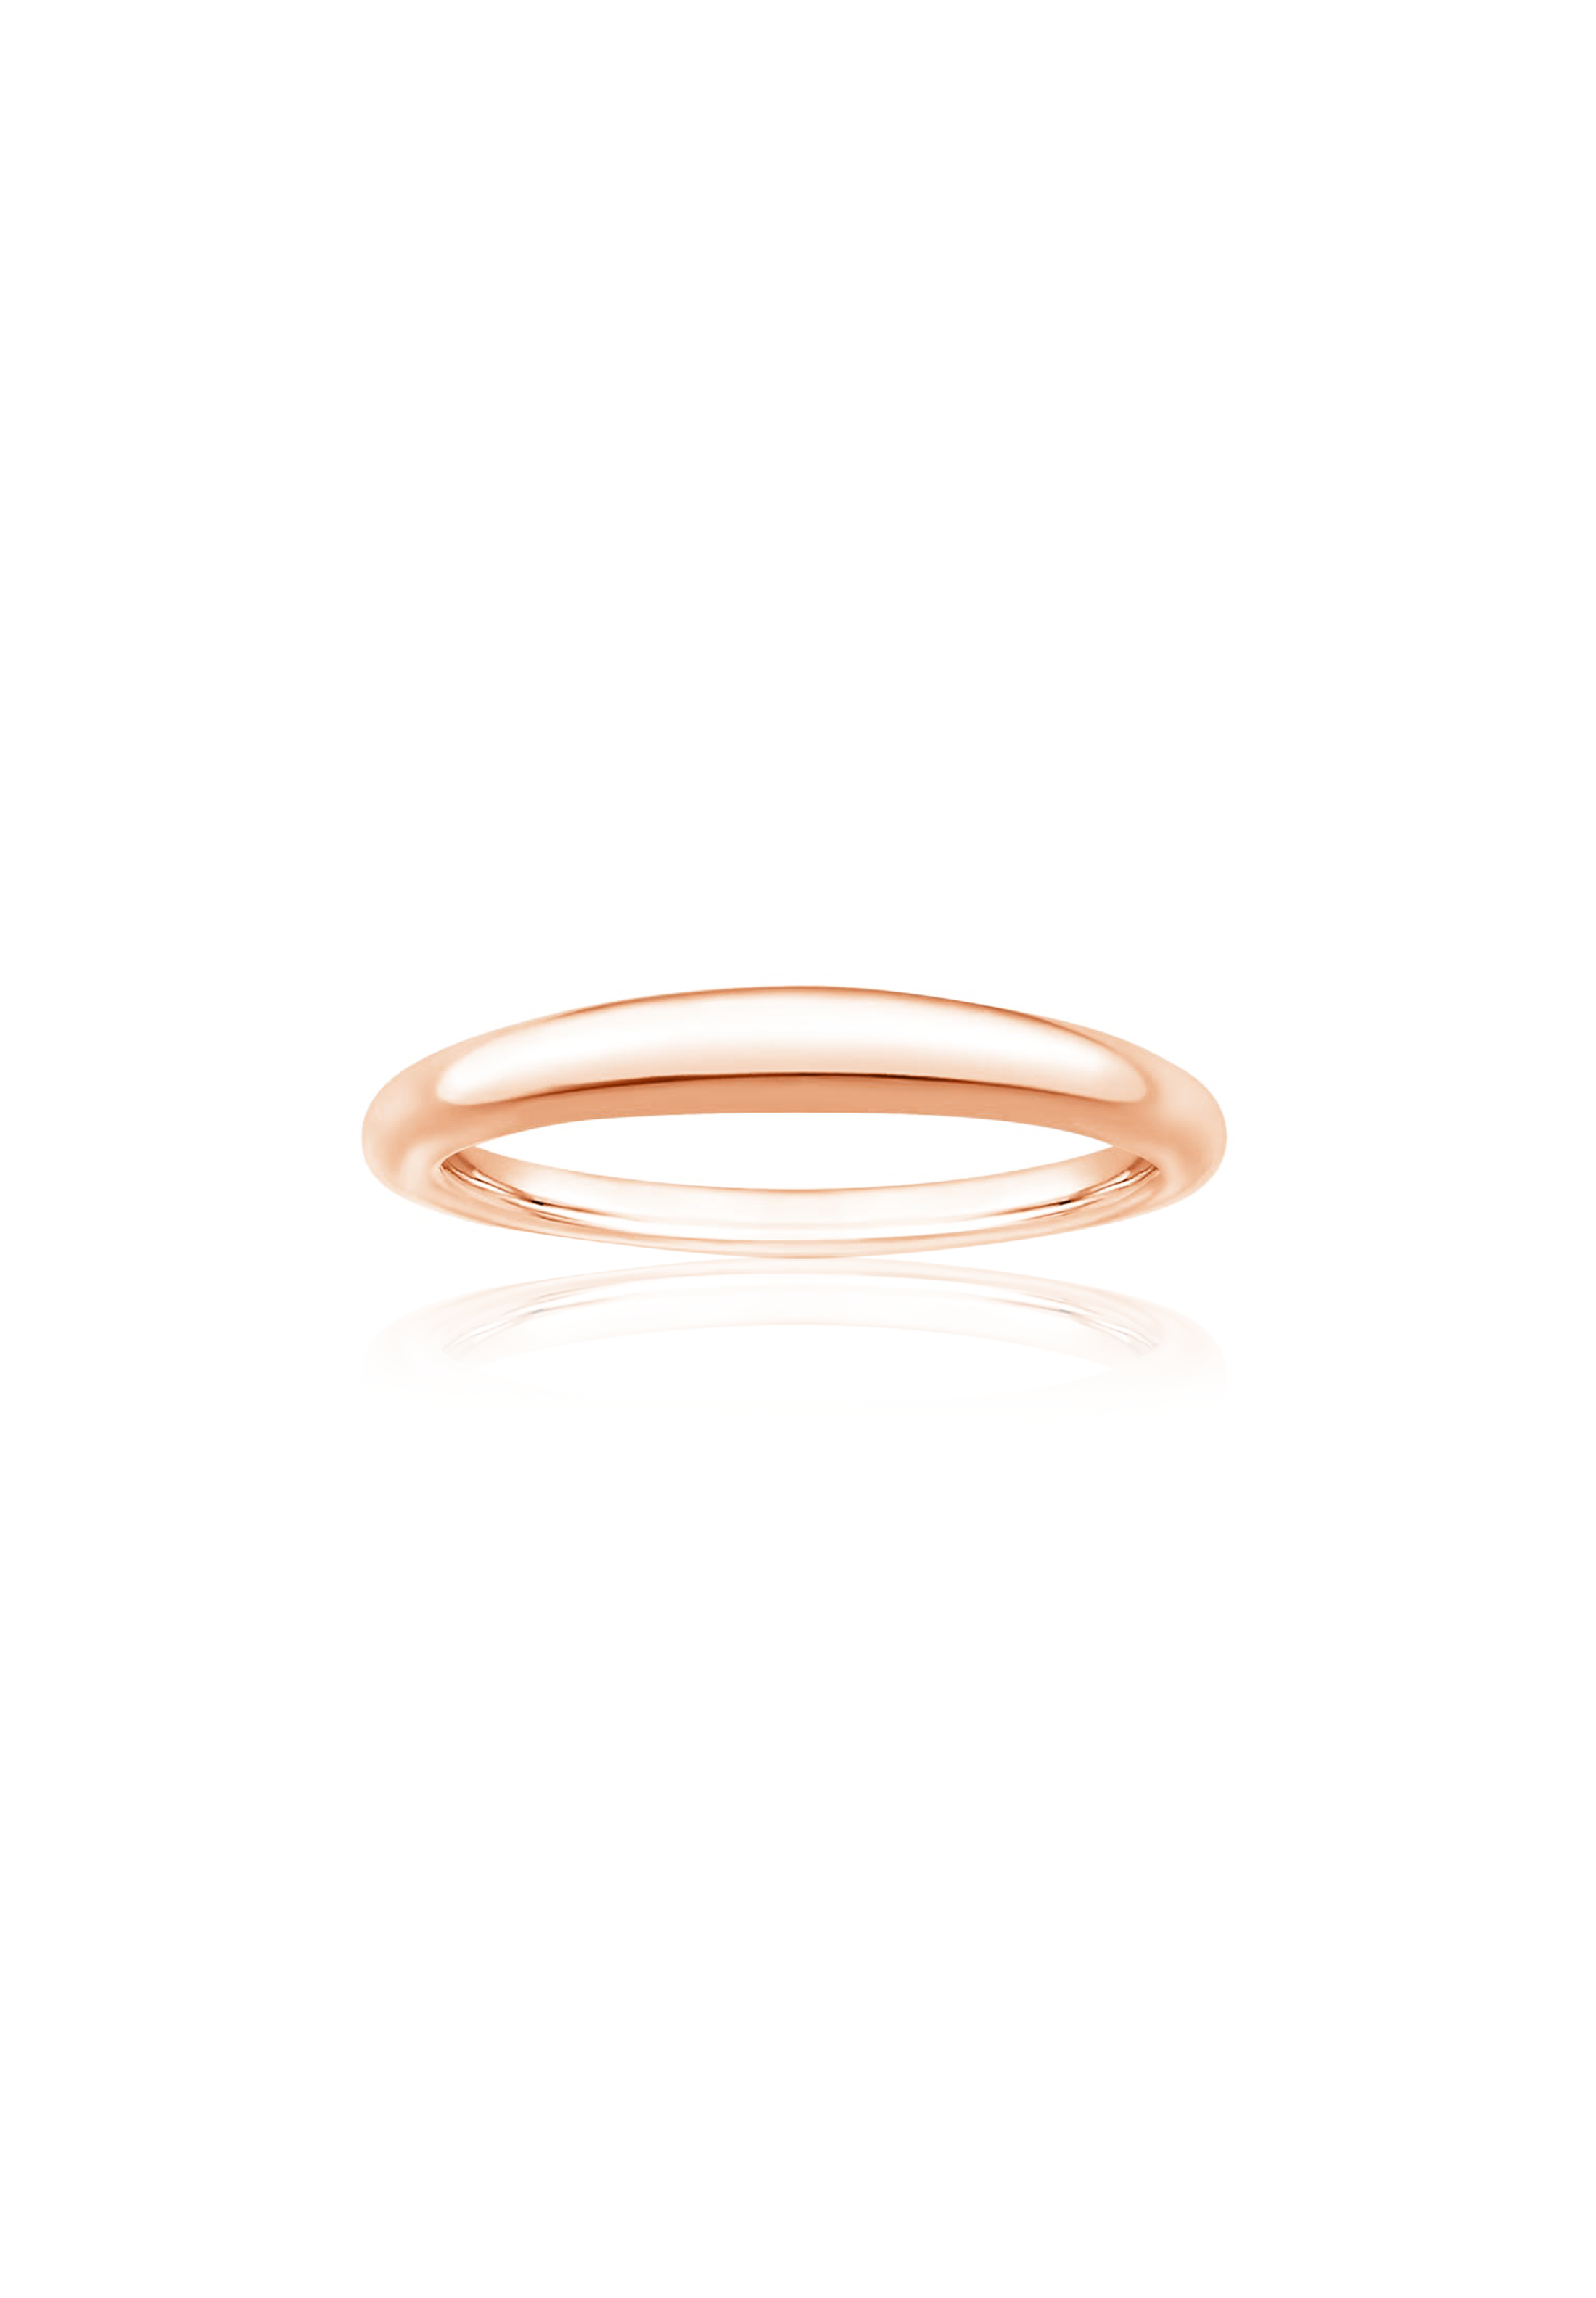 Mini Dome Solid Gold Ring - Fenom & Co.